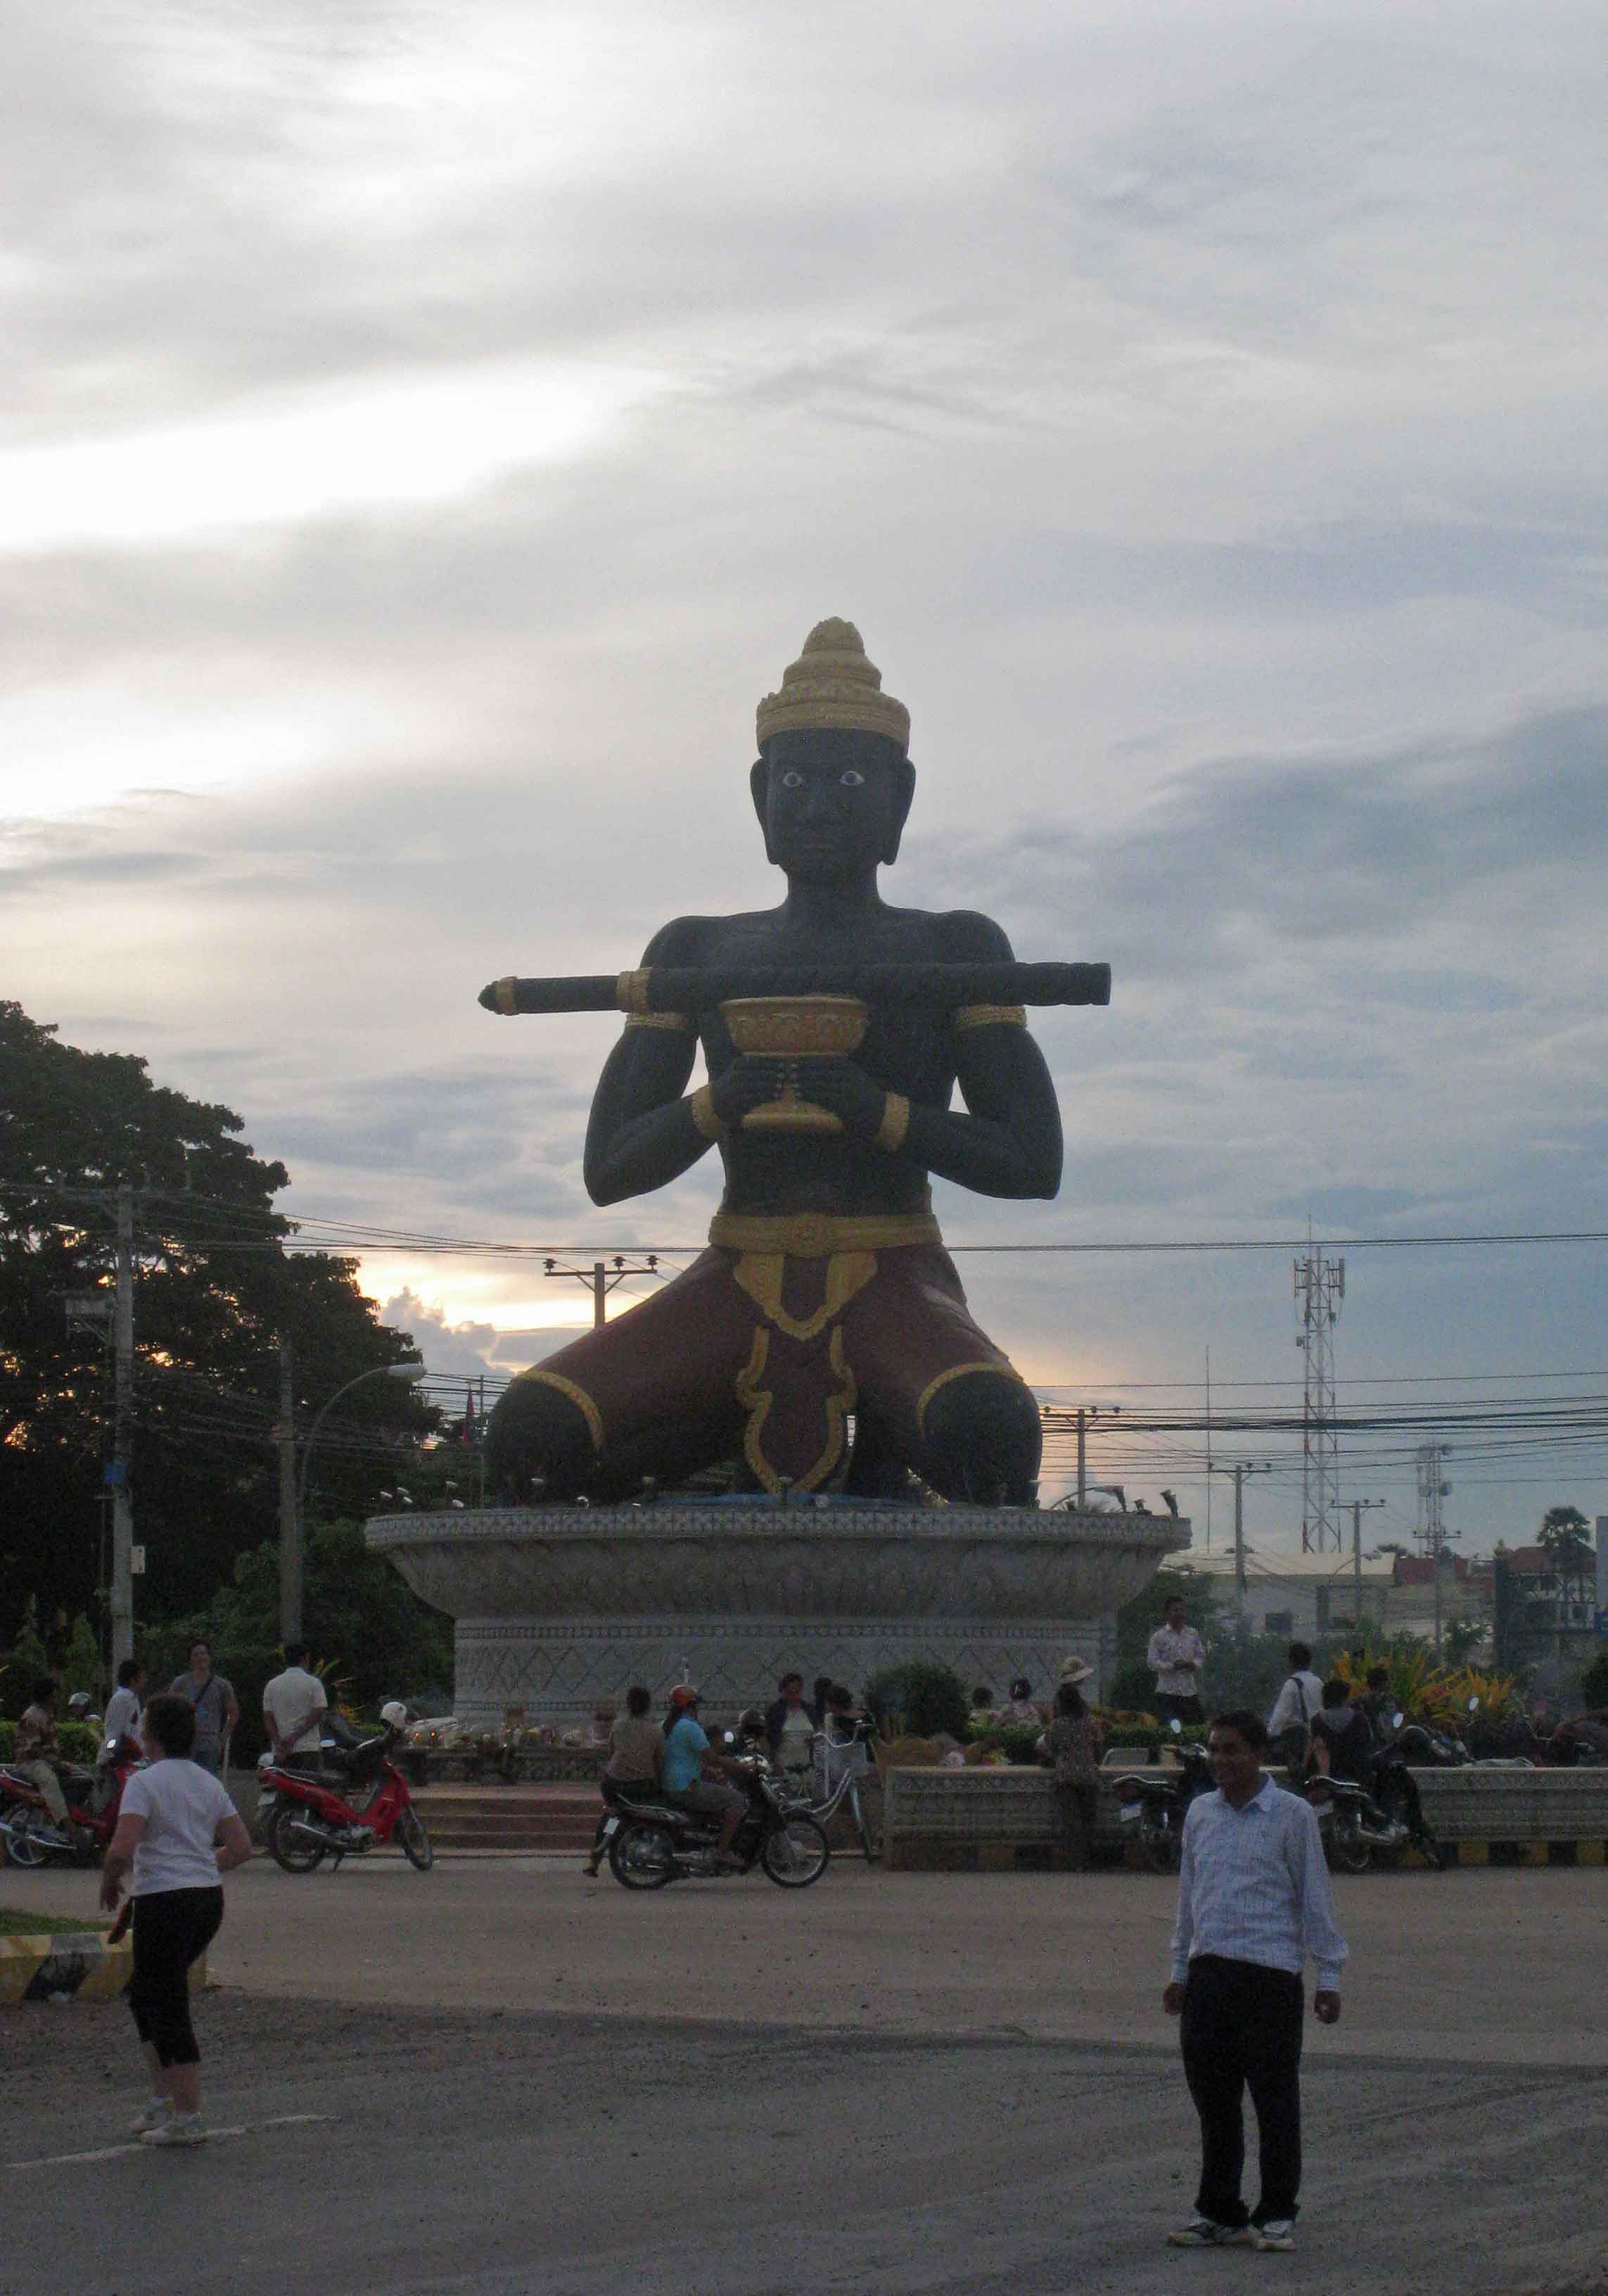 Battambang Roundabout - the province of Battambang